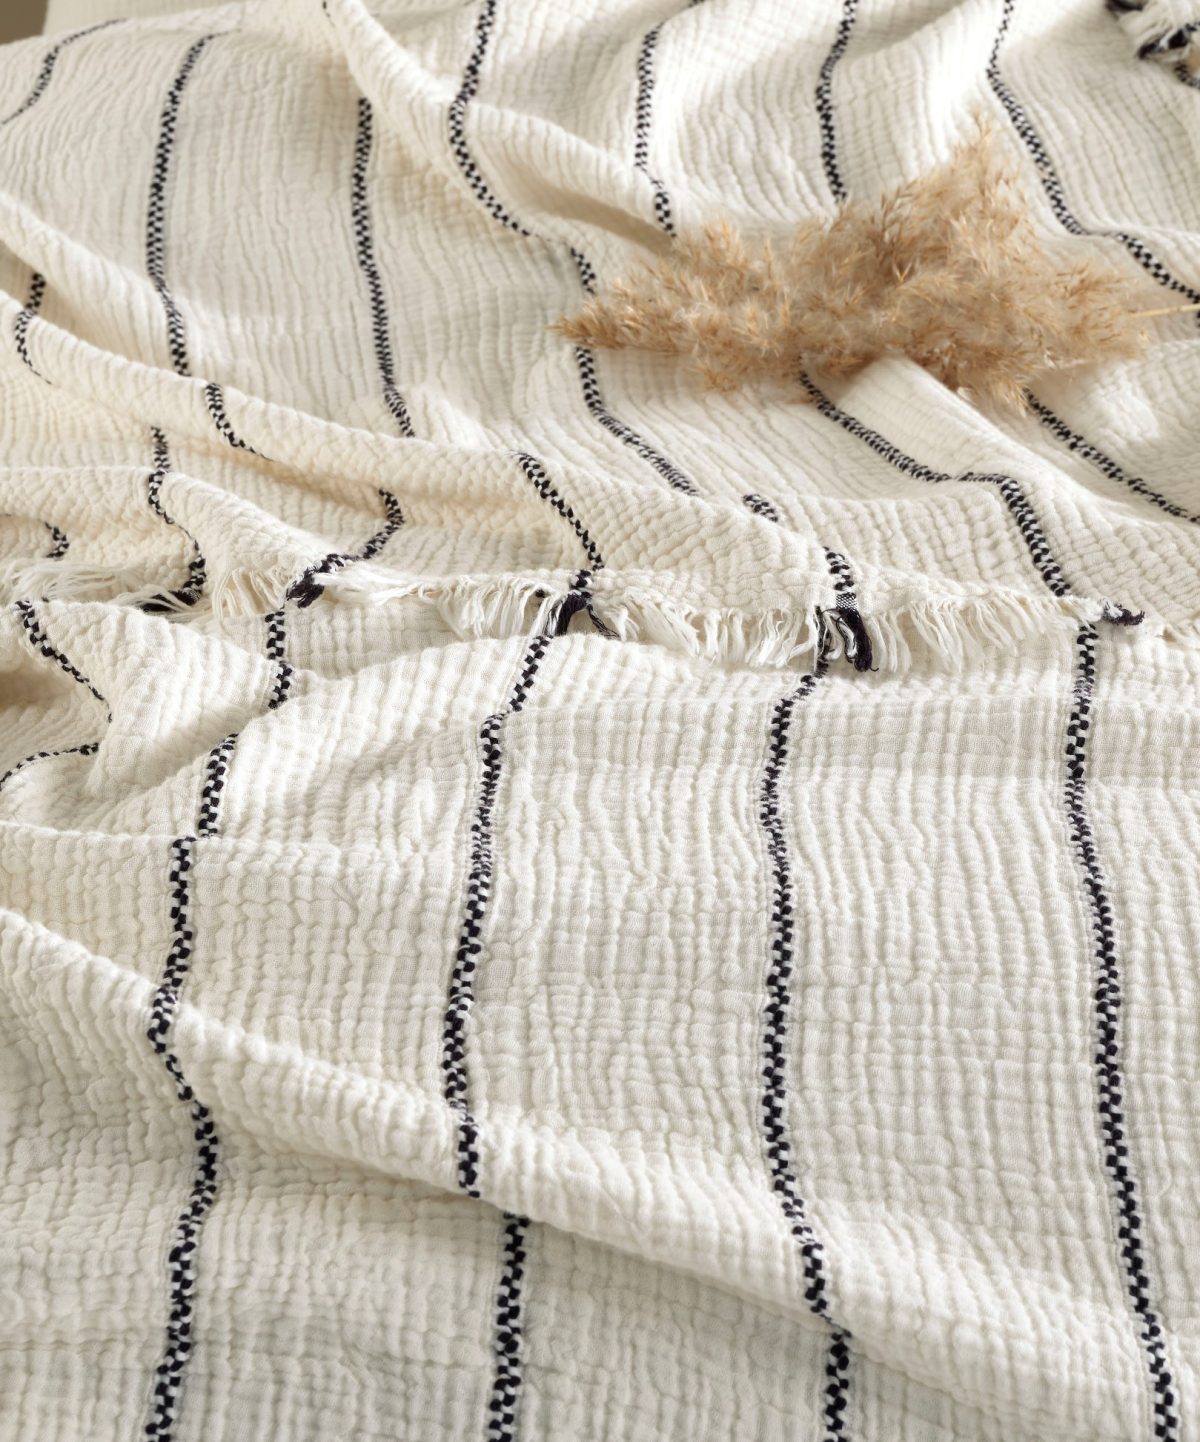 birlik1952 4 kat müslin çift kişilik yatak örtüsü bedspread swaddle 4 layer gauze multi muslin double gauze textile iplik boya cotton muslin siyah black stripe çizgili jaquard jakarlı troya striped